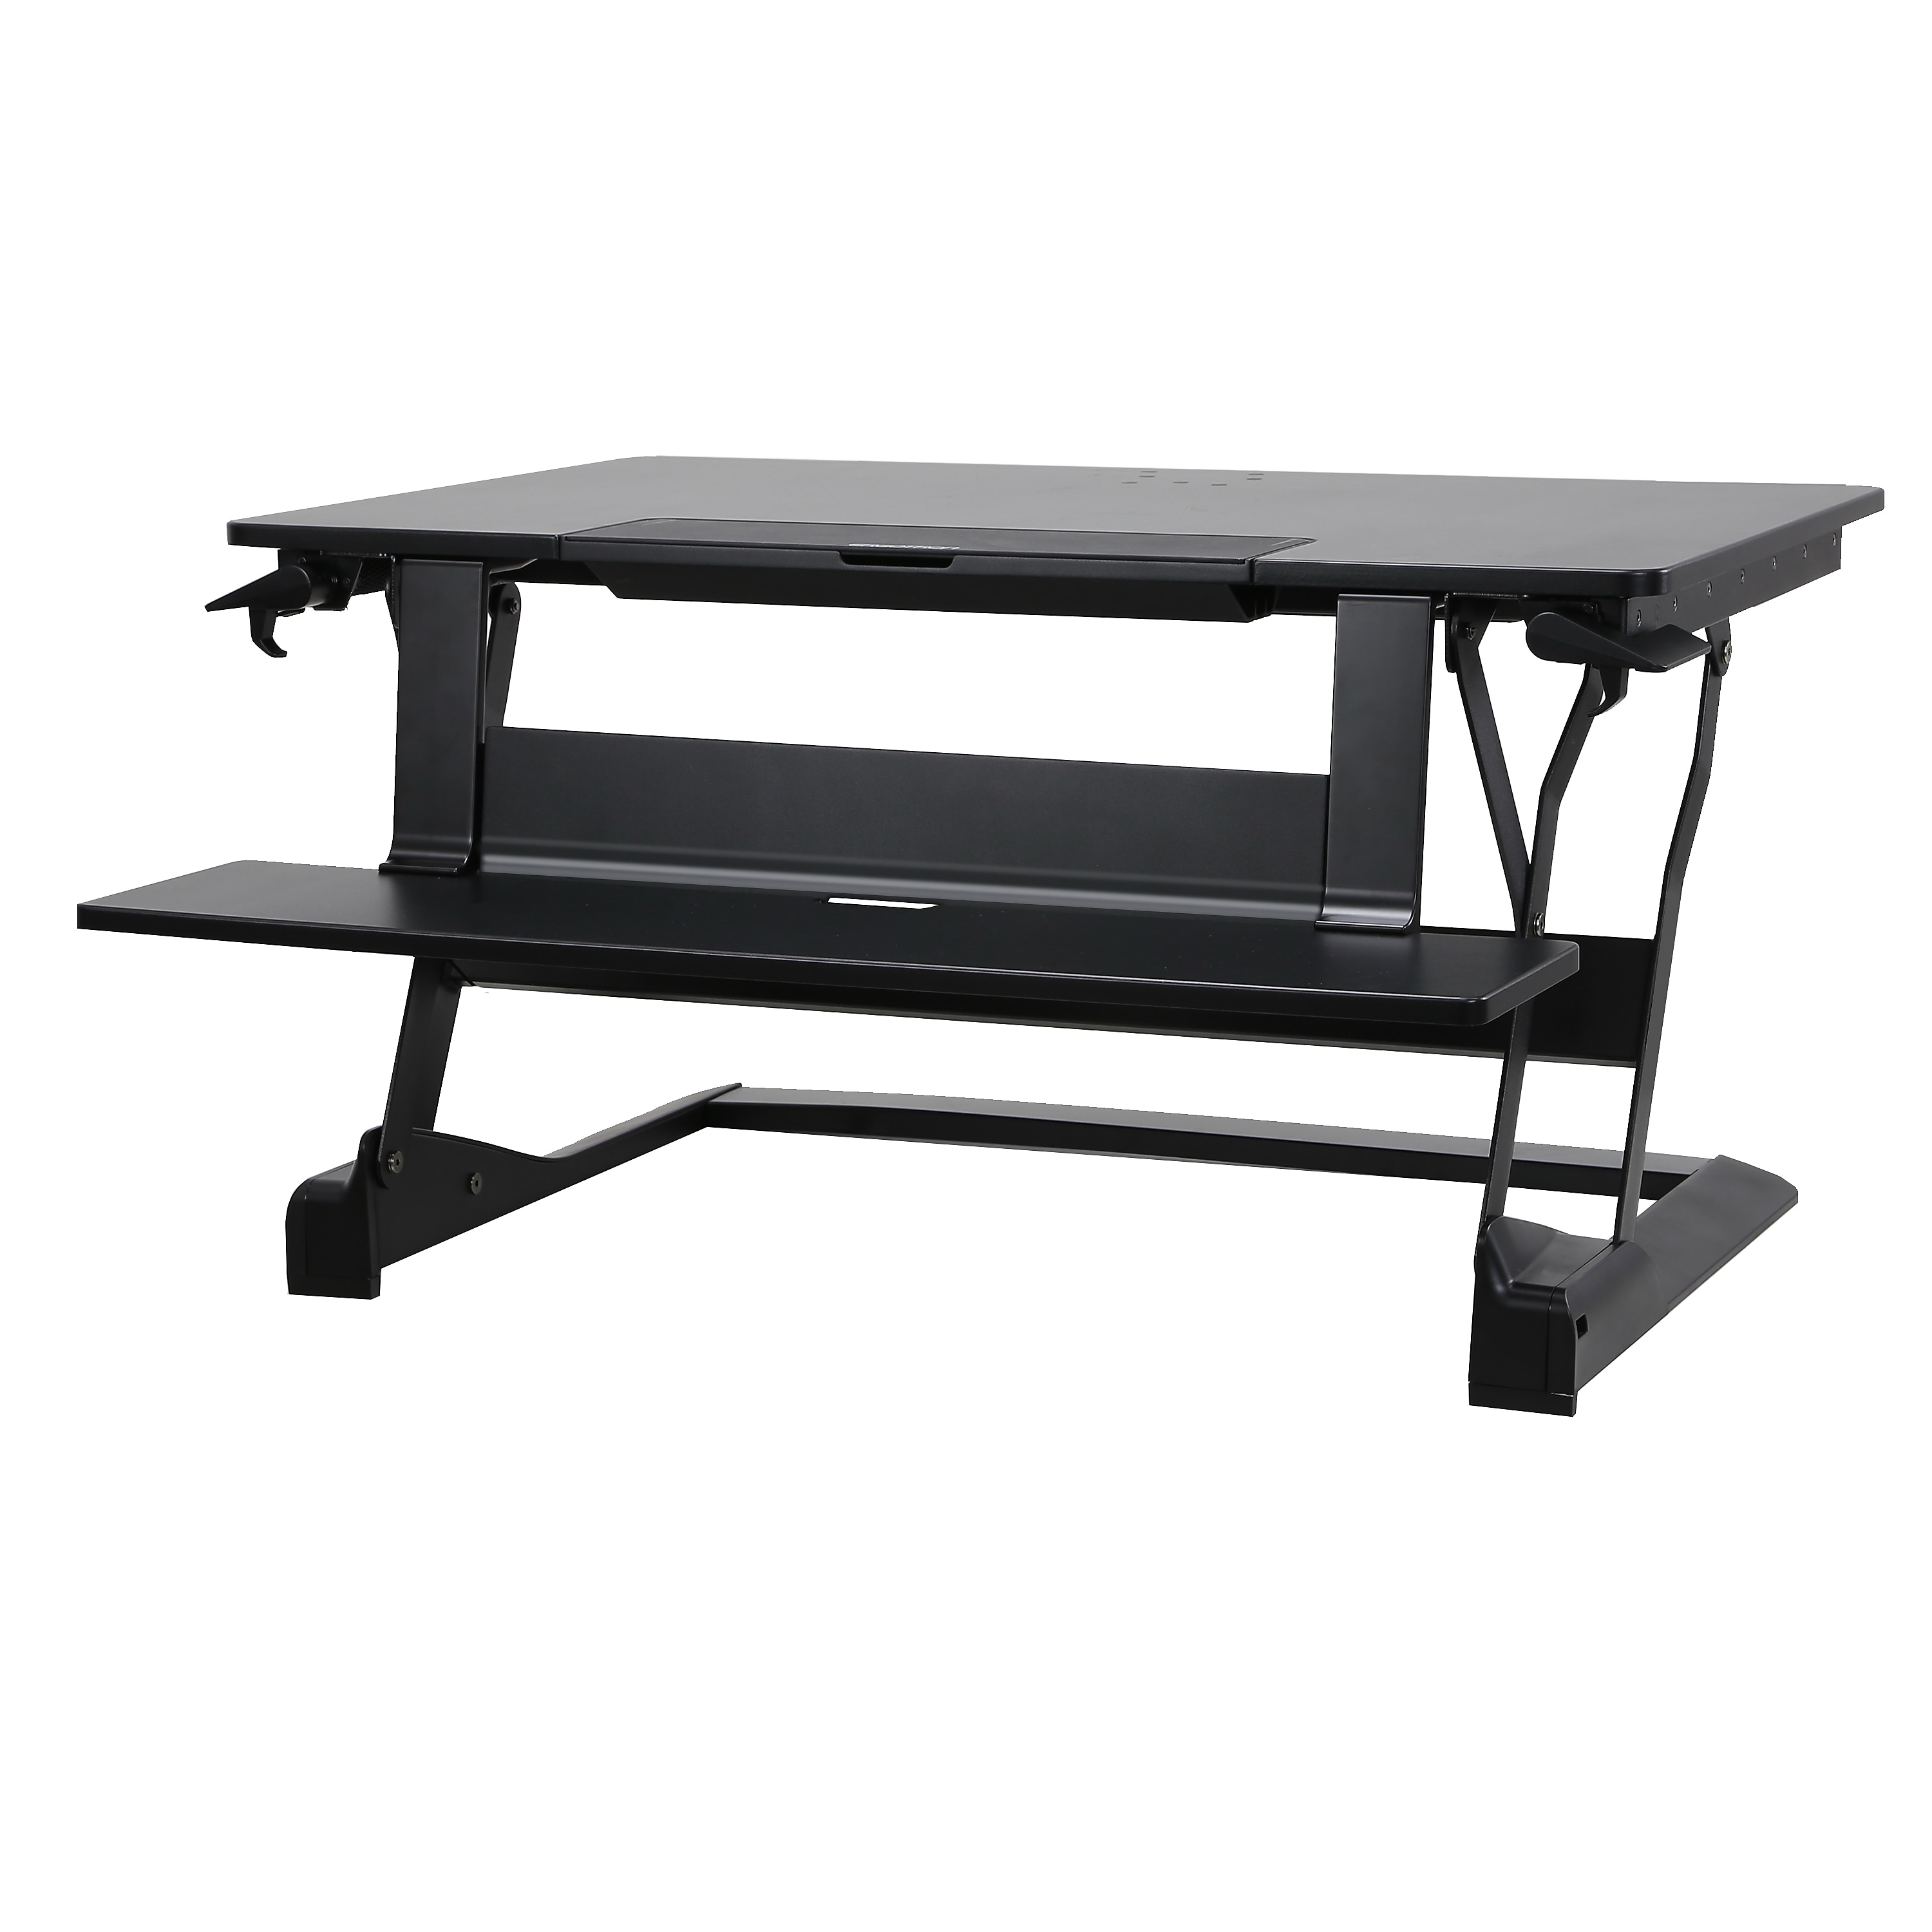 Ergotron WorkFit-TLE Adjustable Riser Desk (33-444-921) - image 1 of 2